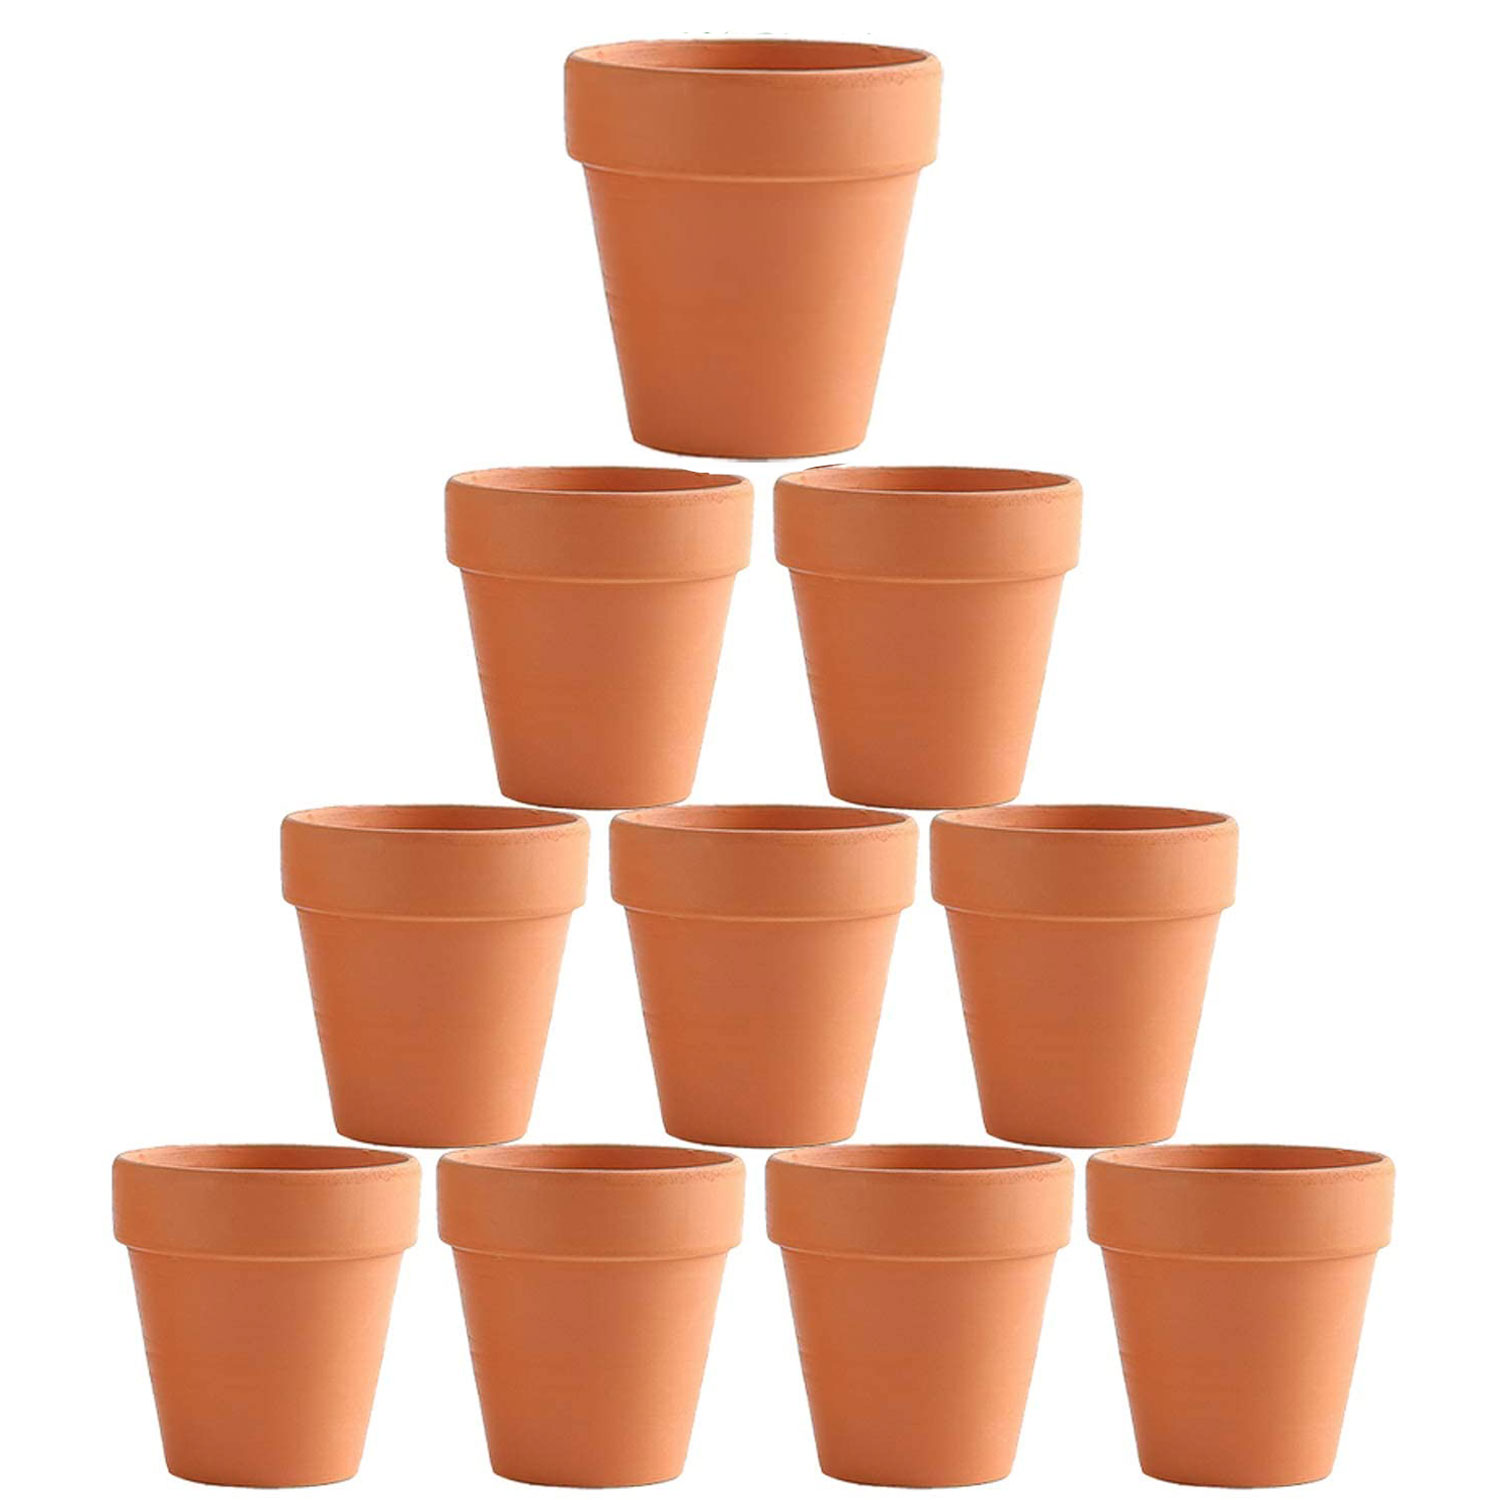 Flower Pot Pots Clay Ceramic Plant Drain Hole Succulent Cactus Nursery Planter – 10×8 cm